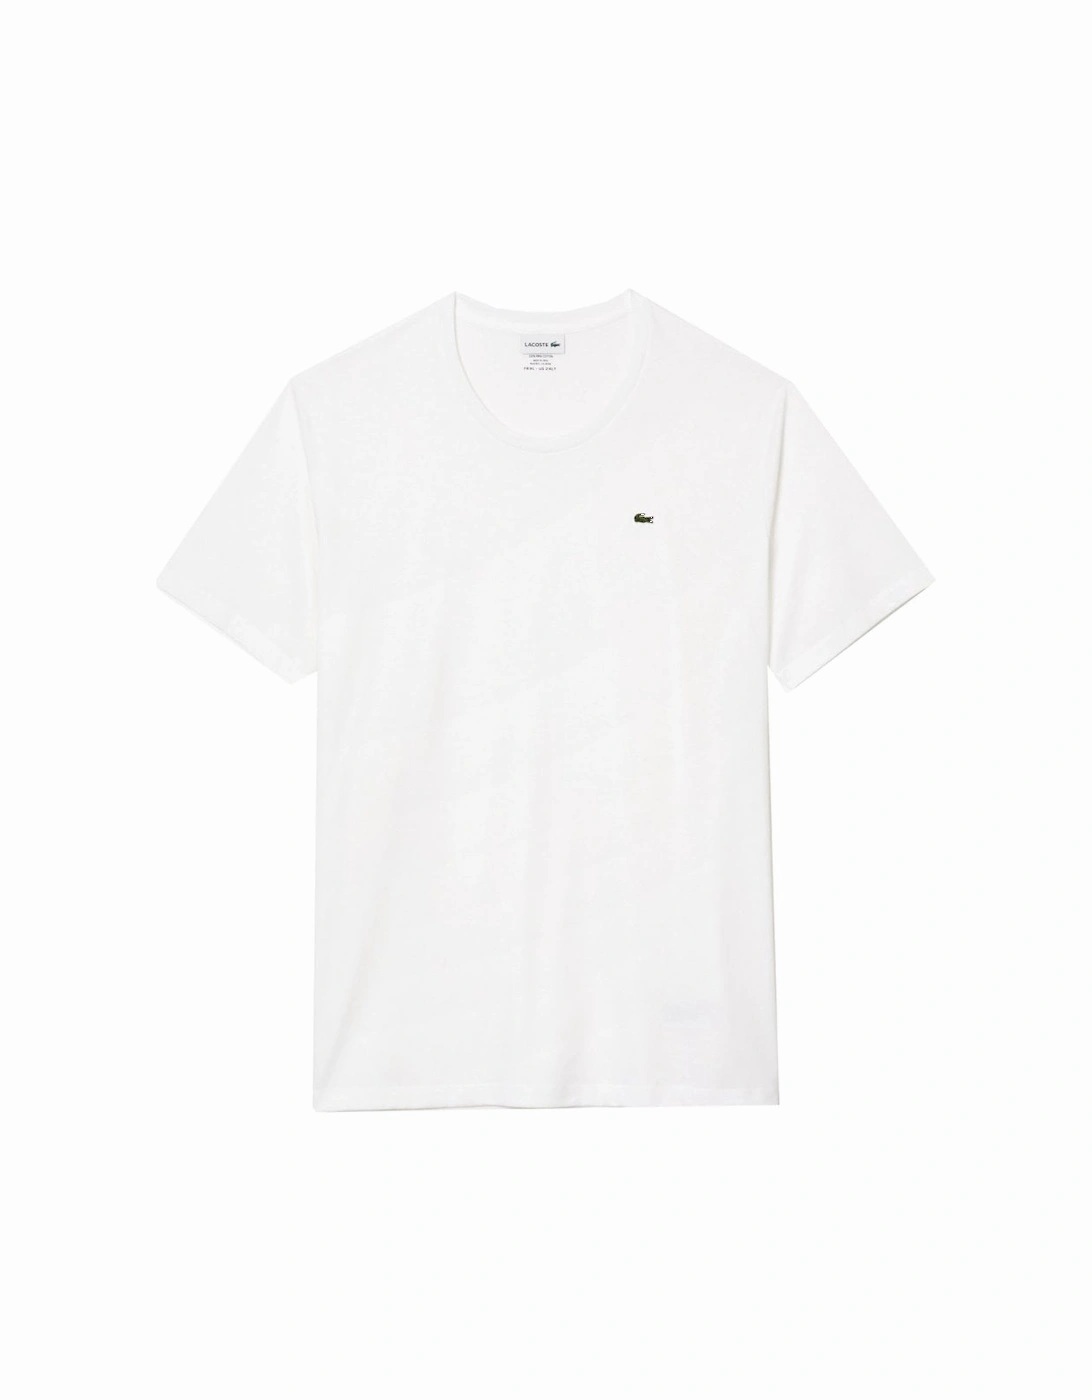 Men's White T-shirt, 3 of 2